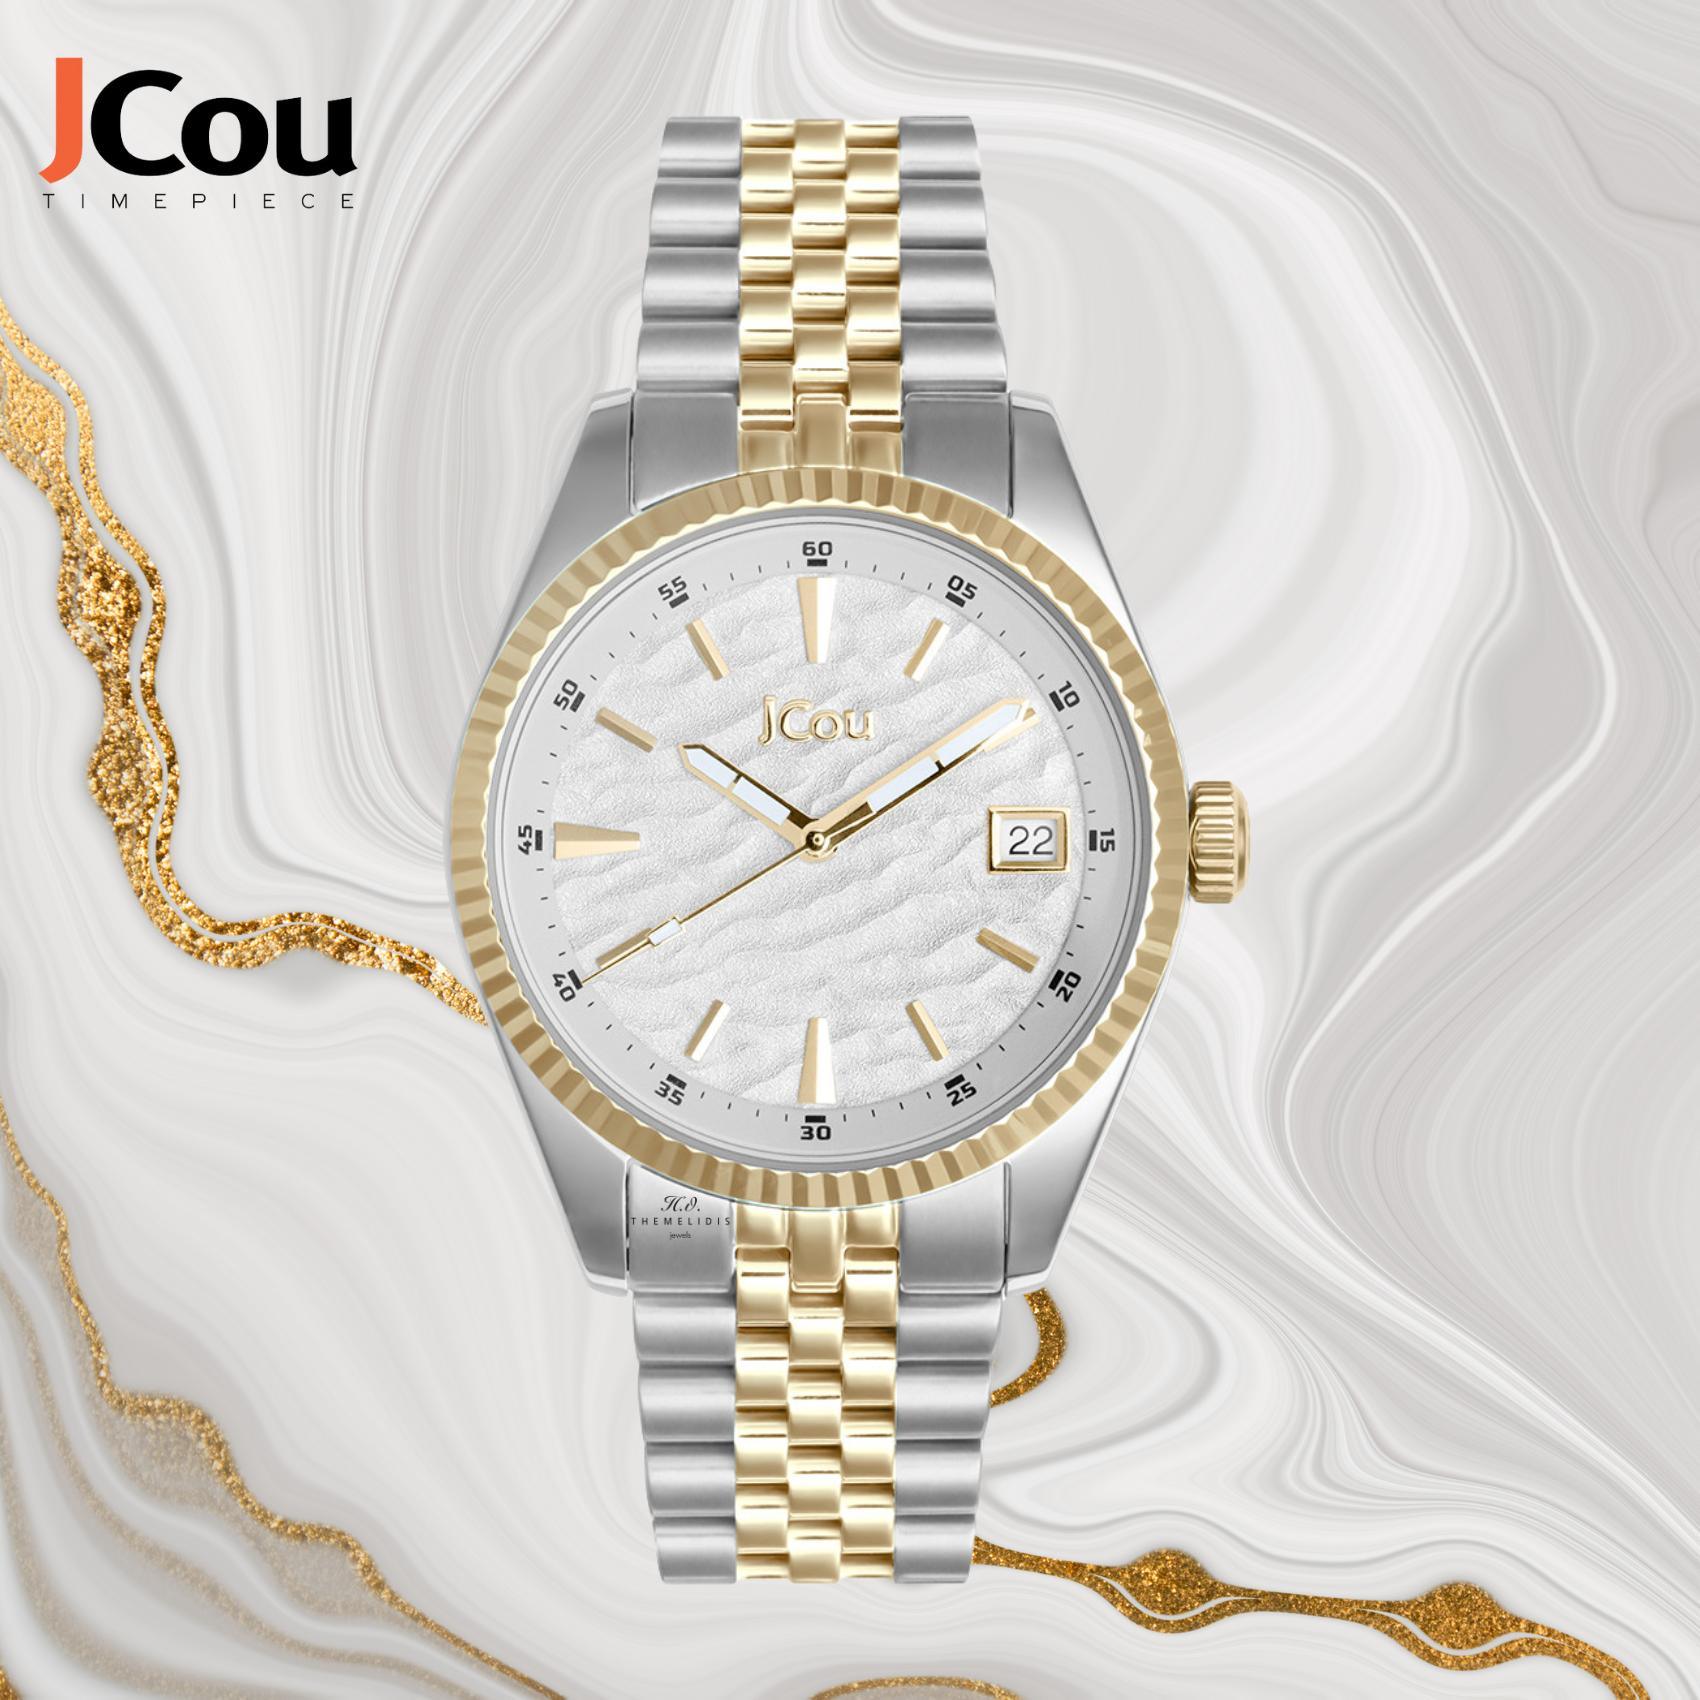 Γυναικέιο ρολόι JCOU Queen's Land JU19071-3 με δίχρωμο ατσάλινο μπρασελέ σε ασημί-χρυσό χρώμα και άσπρο καντράν διαμέτρου 36mm με ημερομηνία.